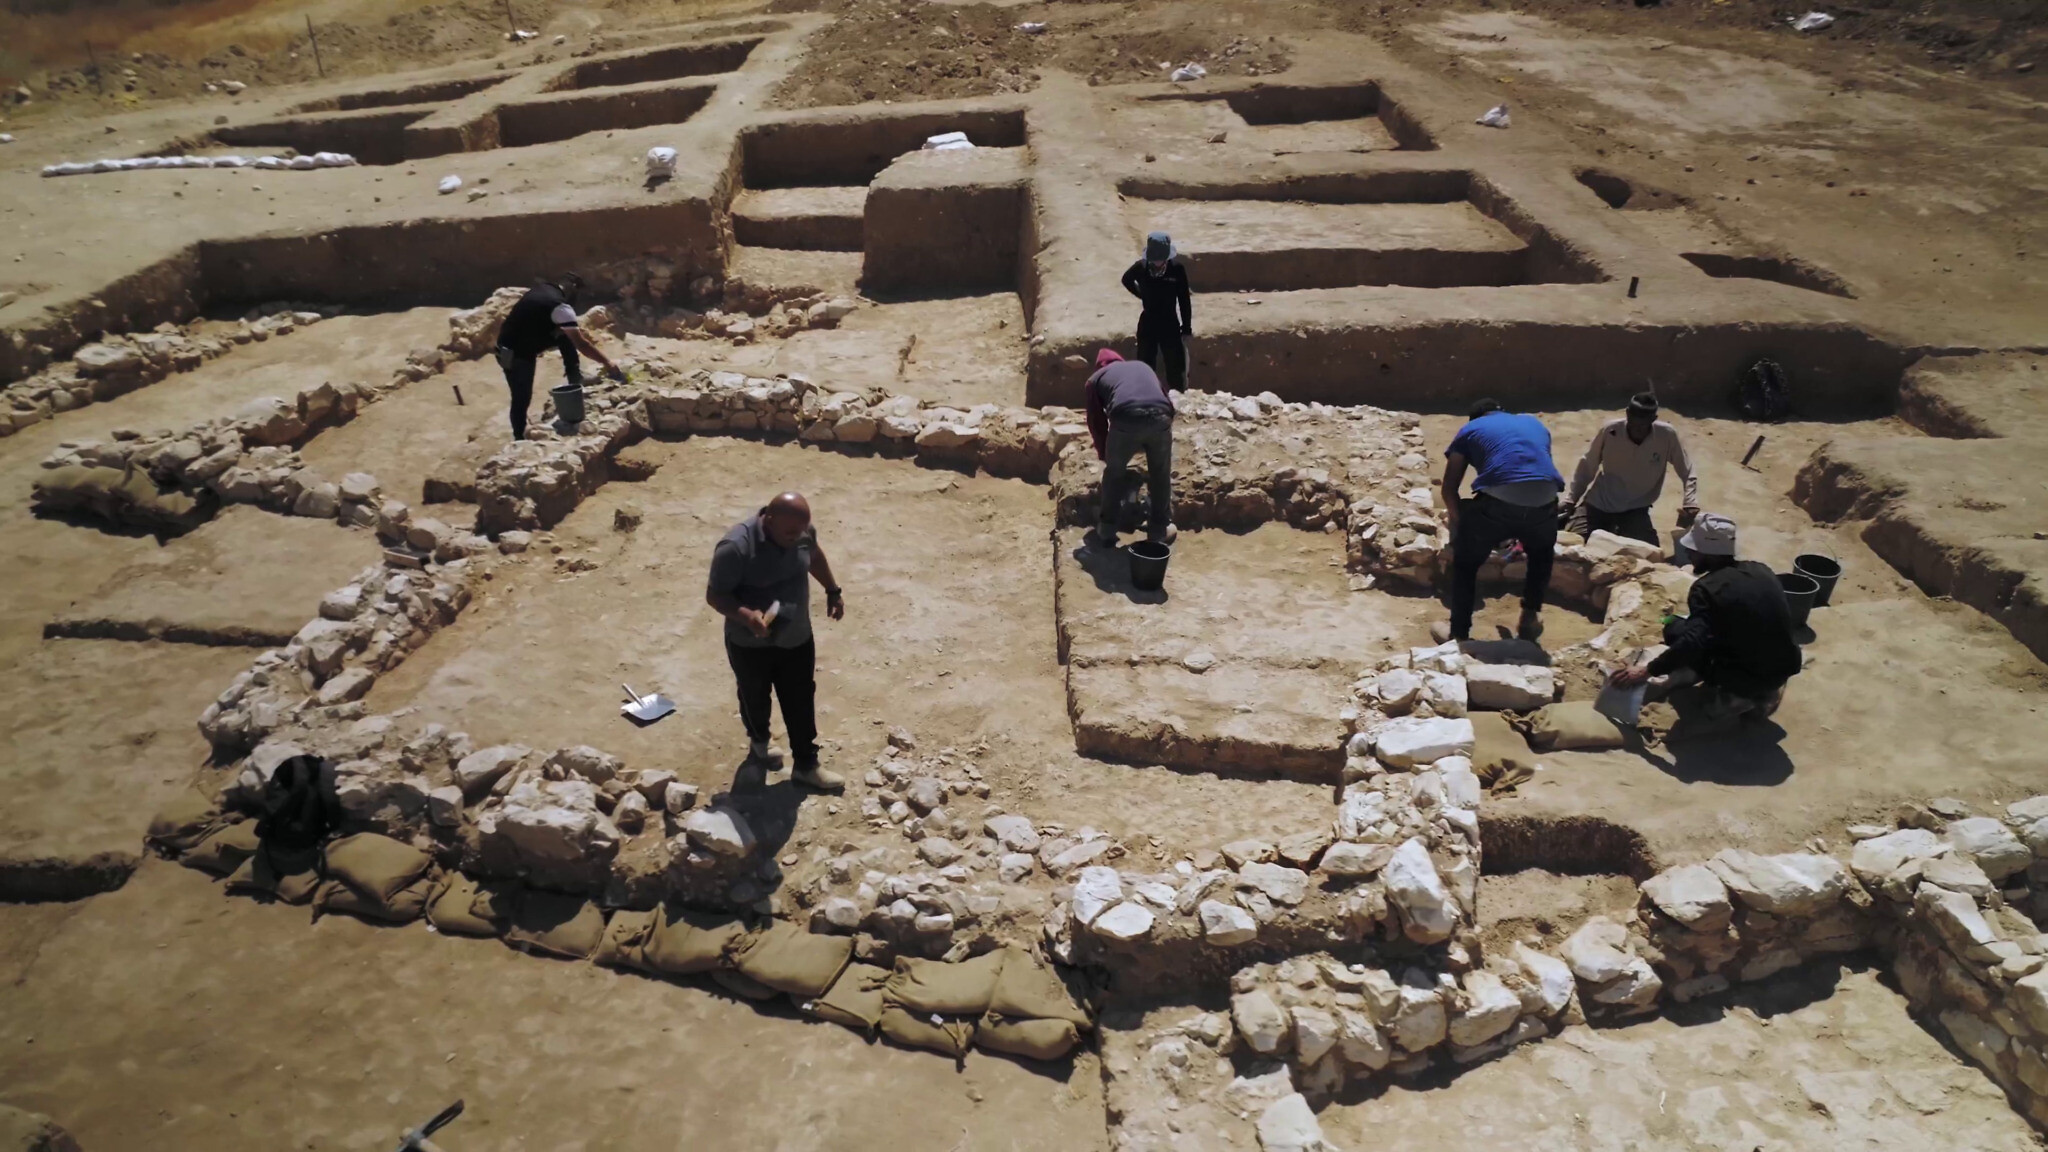 Vue du site en cours de fouille. © Emil Aladjem, Israel Antiquities Authority